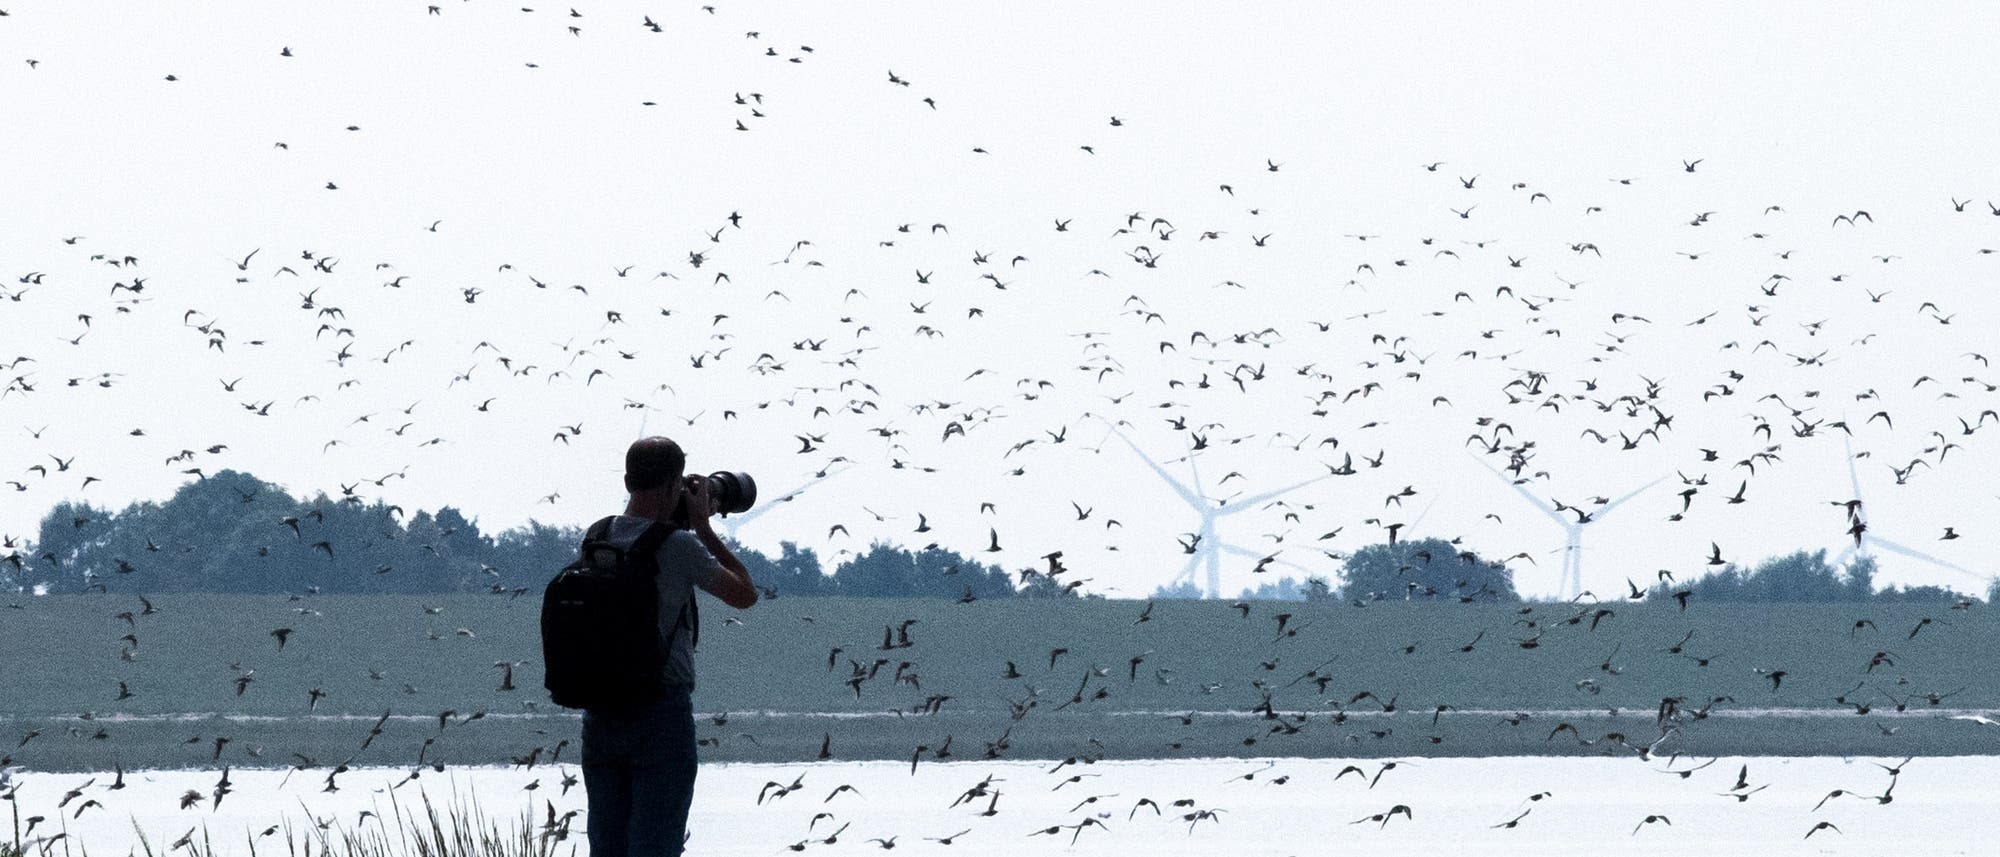 Ein Mann fotografiert die Sandregenpfeifer, Alpenstrandläufer und andere Zugvögel, die über das Wattenmeer der Nordseebucht Jadebusen fliegen. 